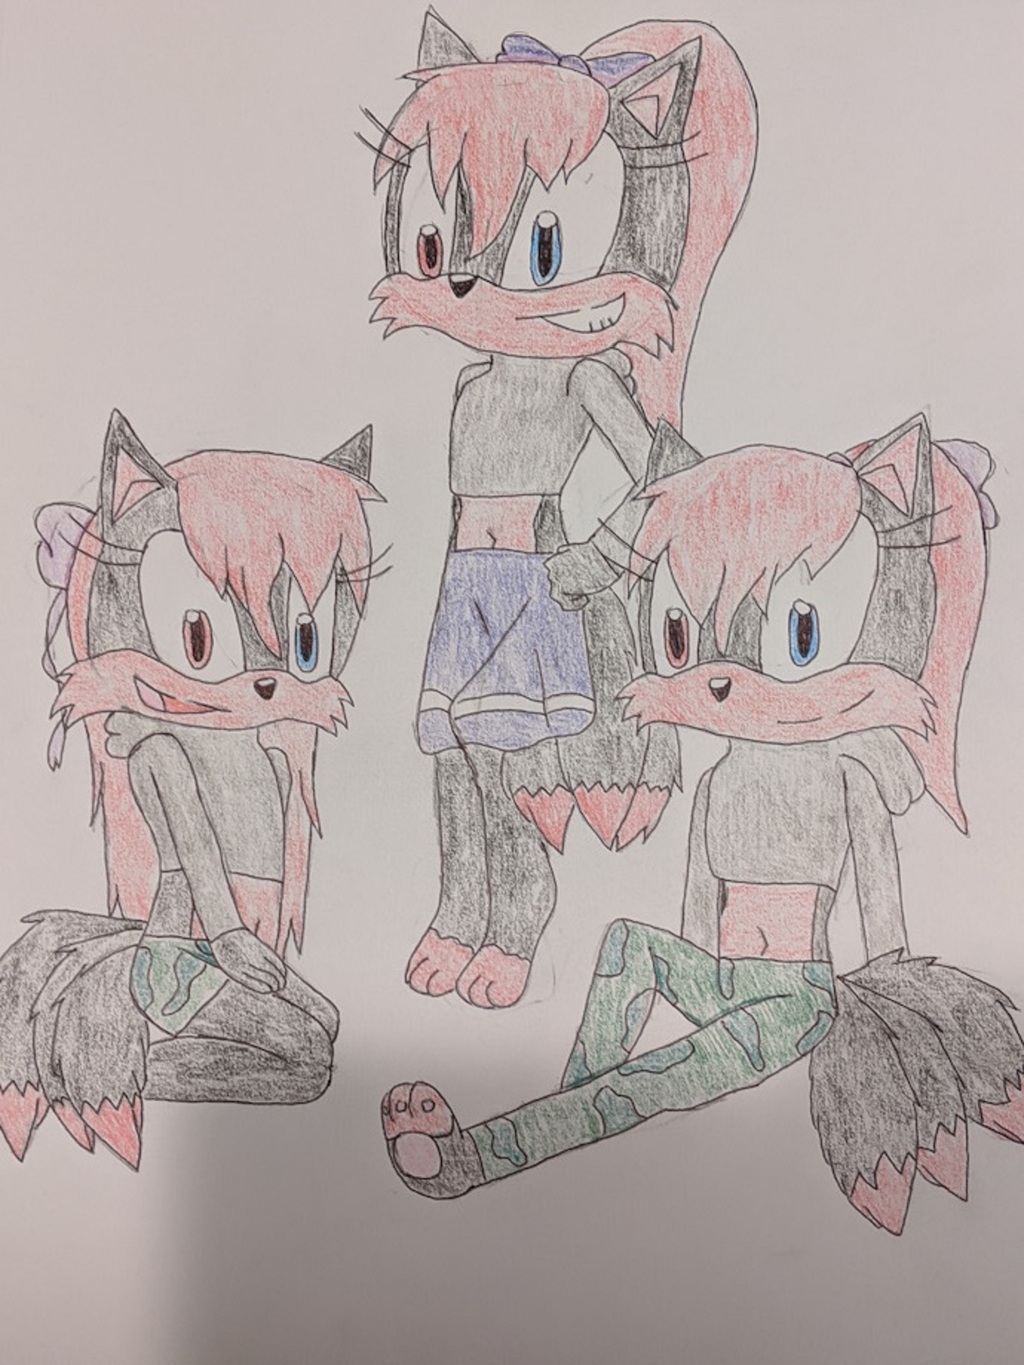 Kayda, Kazane and Kazashi the three tailed foxes